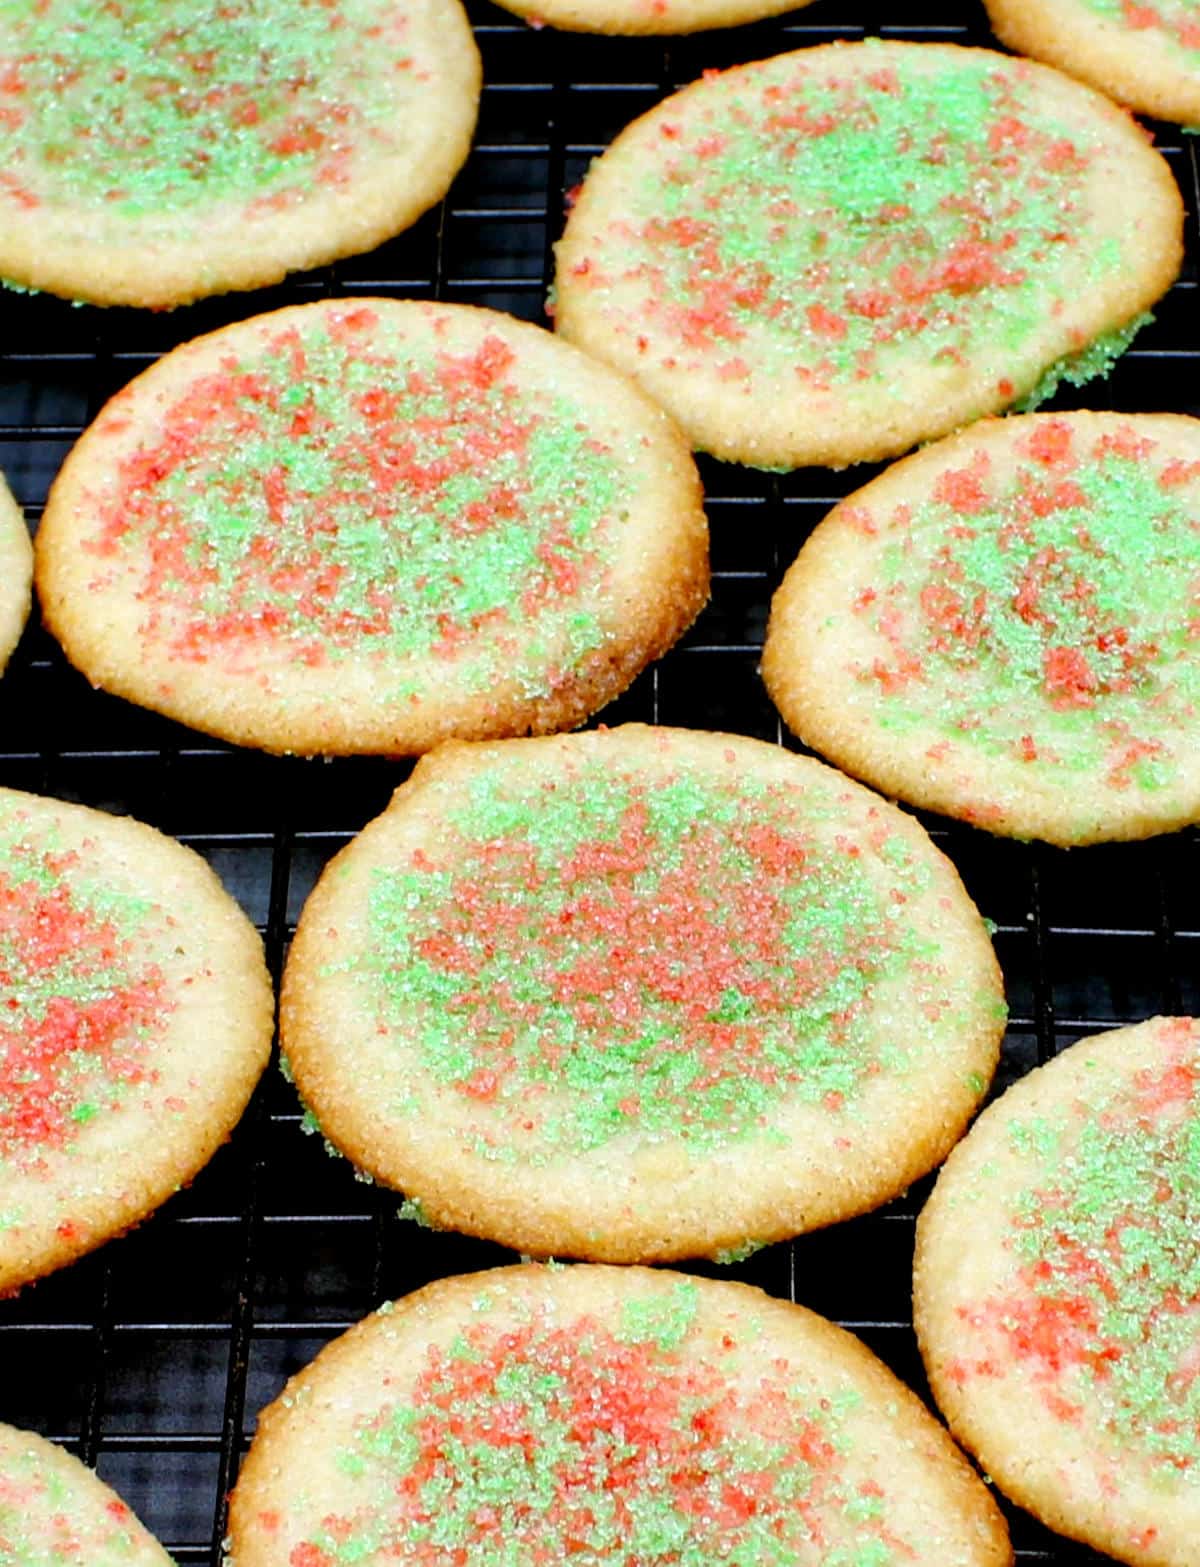 एक तार रैक पर रंगीन चीनी शीतलन के साथ सजाए गए शाकाहारी बादाम कुकीज़ की सामने की तस्वीर।